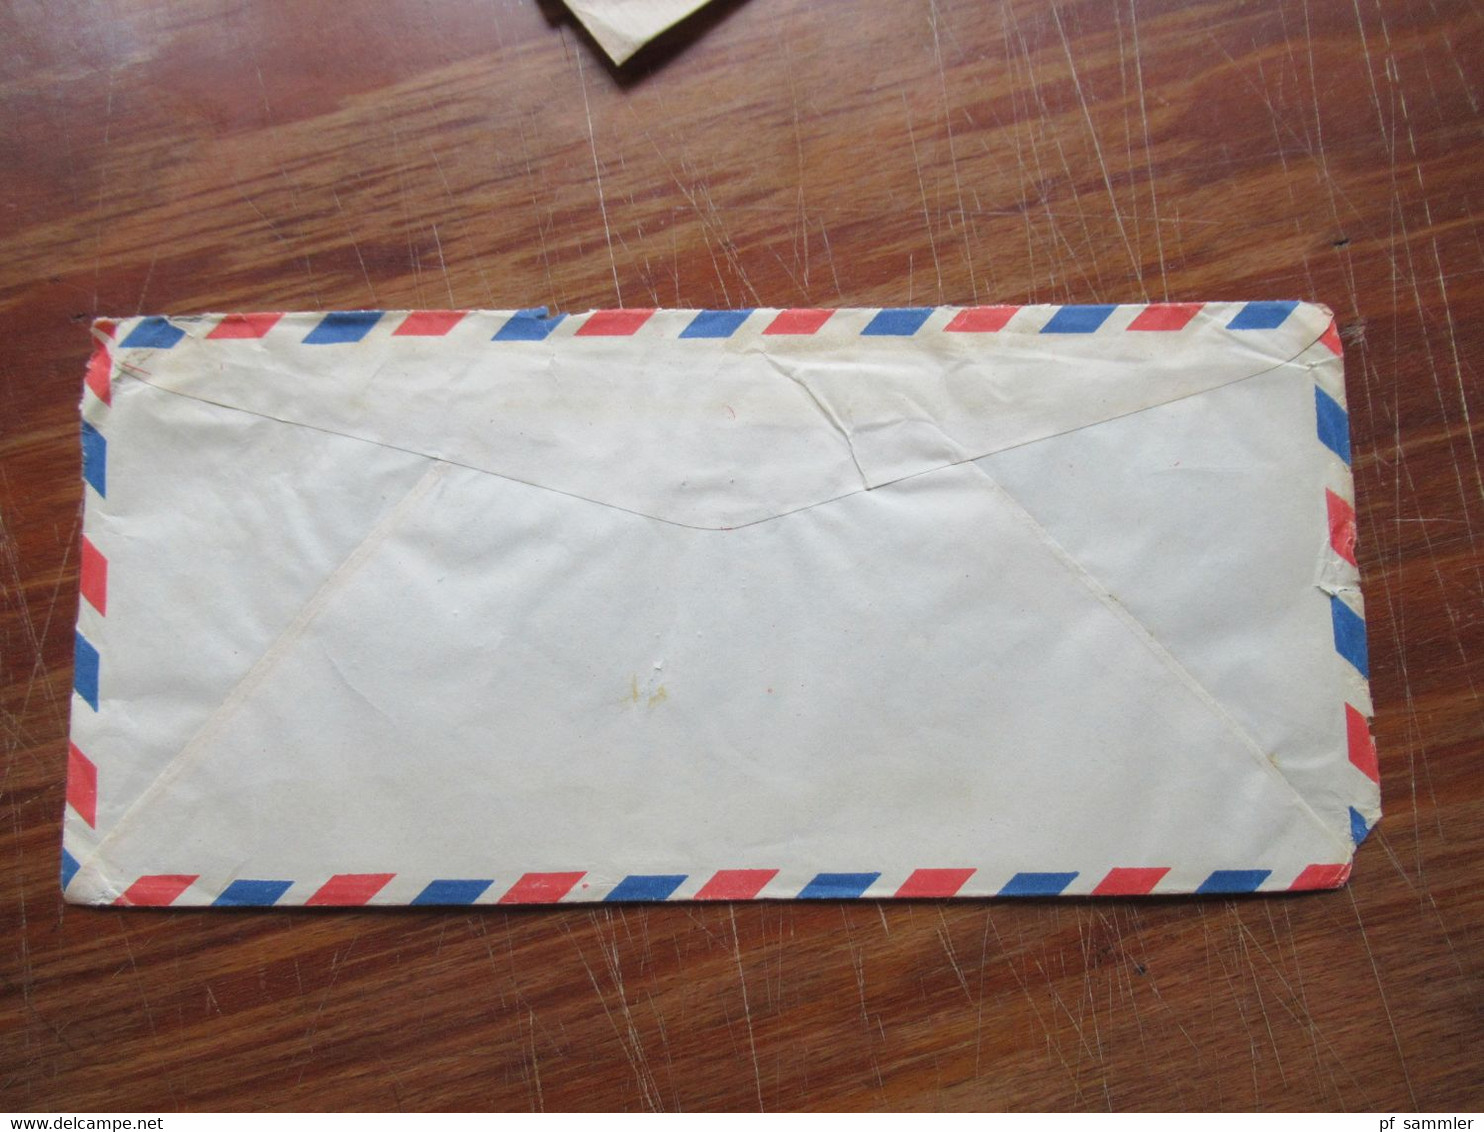 Asien VR China / Taiwan 1980er Jahre kleiner Posten mit 6 Firmenbriefe Air Mail / registered letter